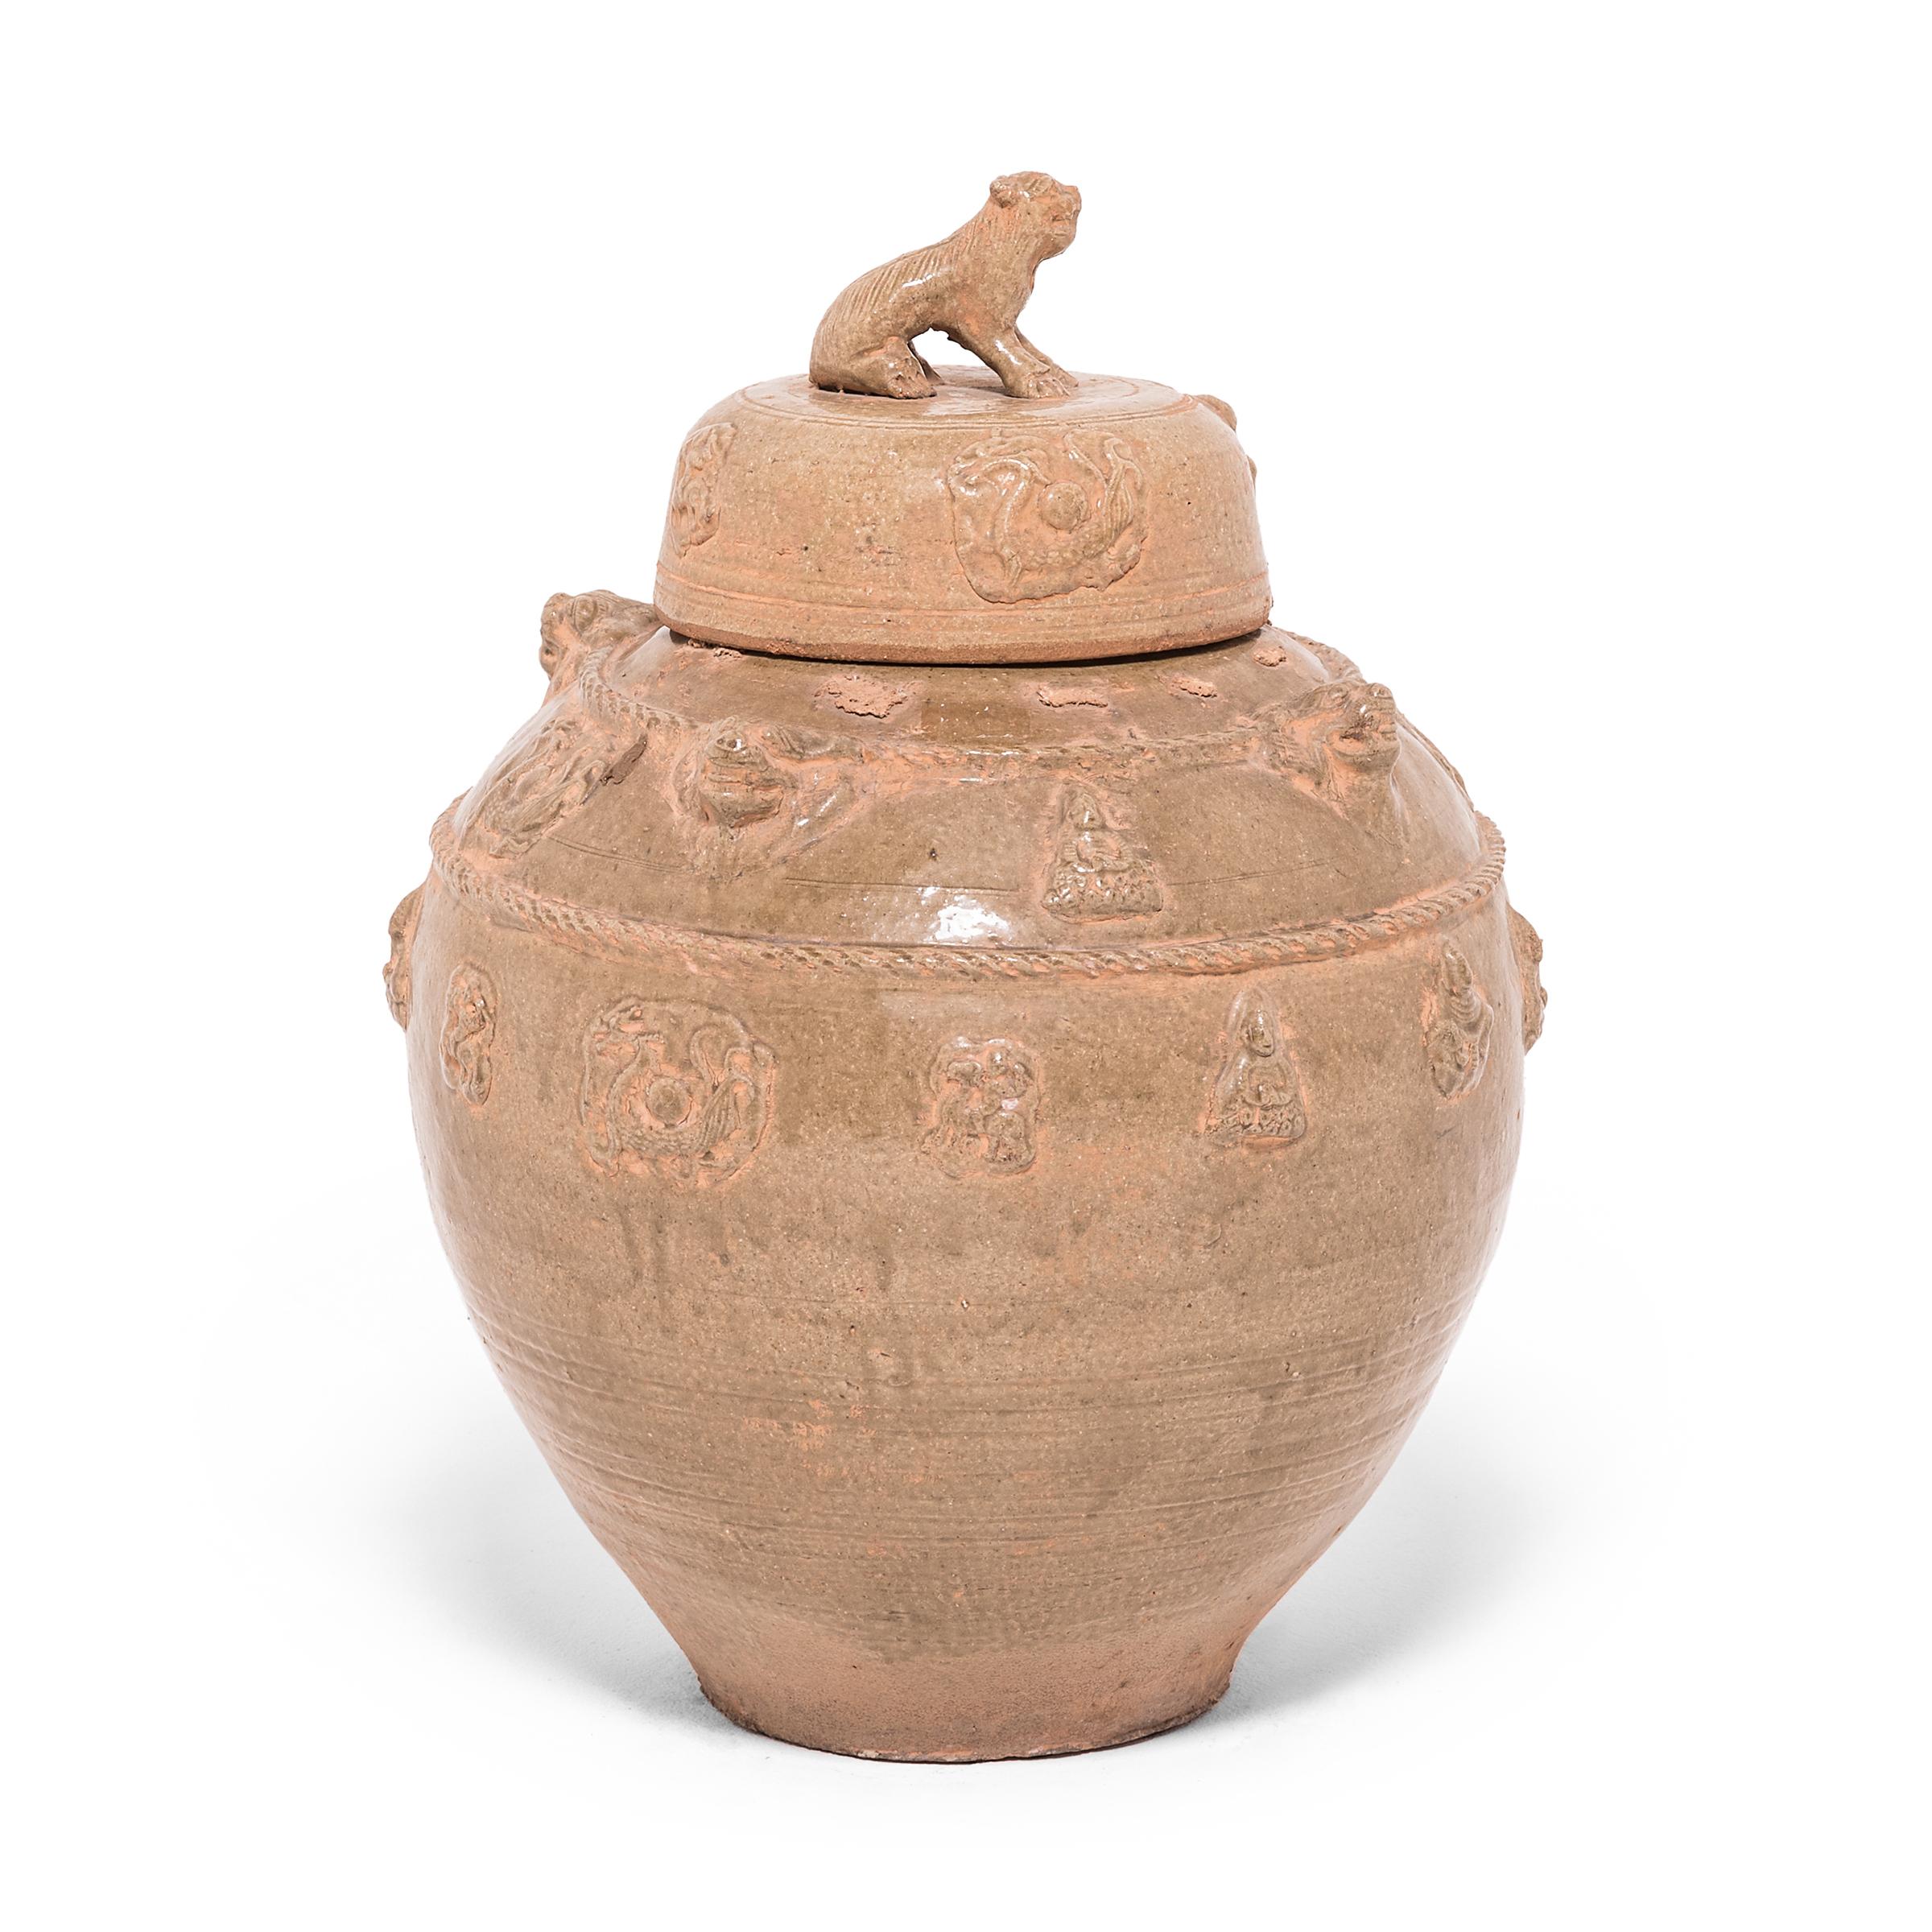 Dieses Keramikgefäß wurde in der Region Jiangxi in China nach dem Vorbild alter Tempelgefäße handgefertigt. Der Stil und die Glasur erinnern an Grabgefäße aus der Han-Dynastie, die zur Aufbewahrung von Wein für den Übergang ins Jenseits bestimmt